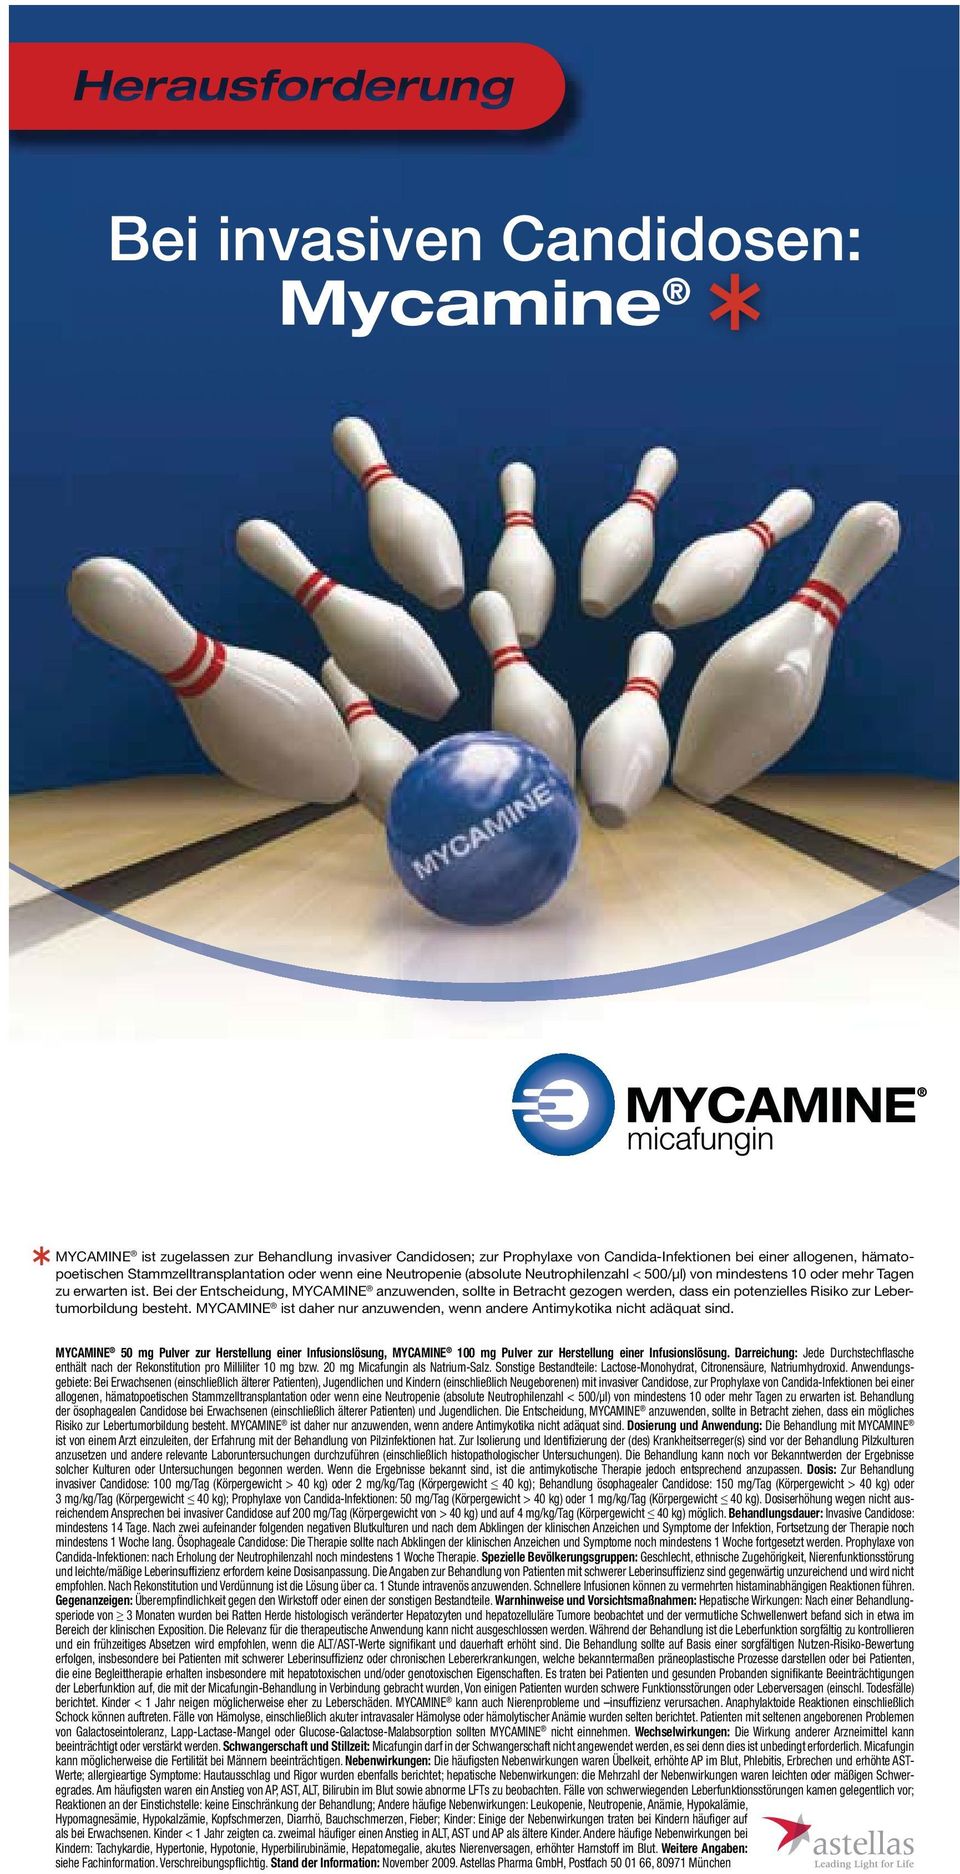 Bei der Entscheidung, MYCAMINE anzuwenden, sollte in Betracht gezogen werden, dass ein potenzielles Risiko zur Lebertumorbildung besteht.